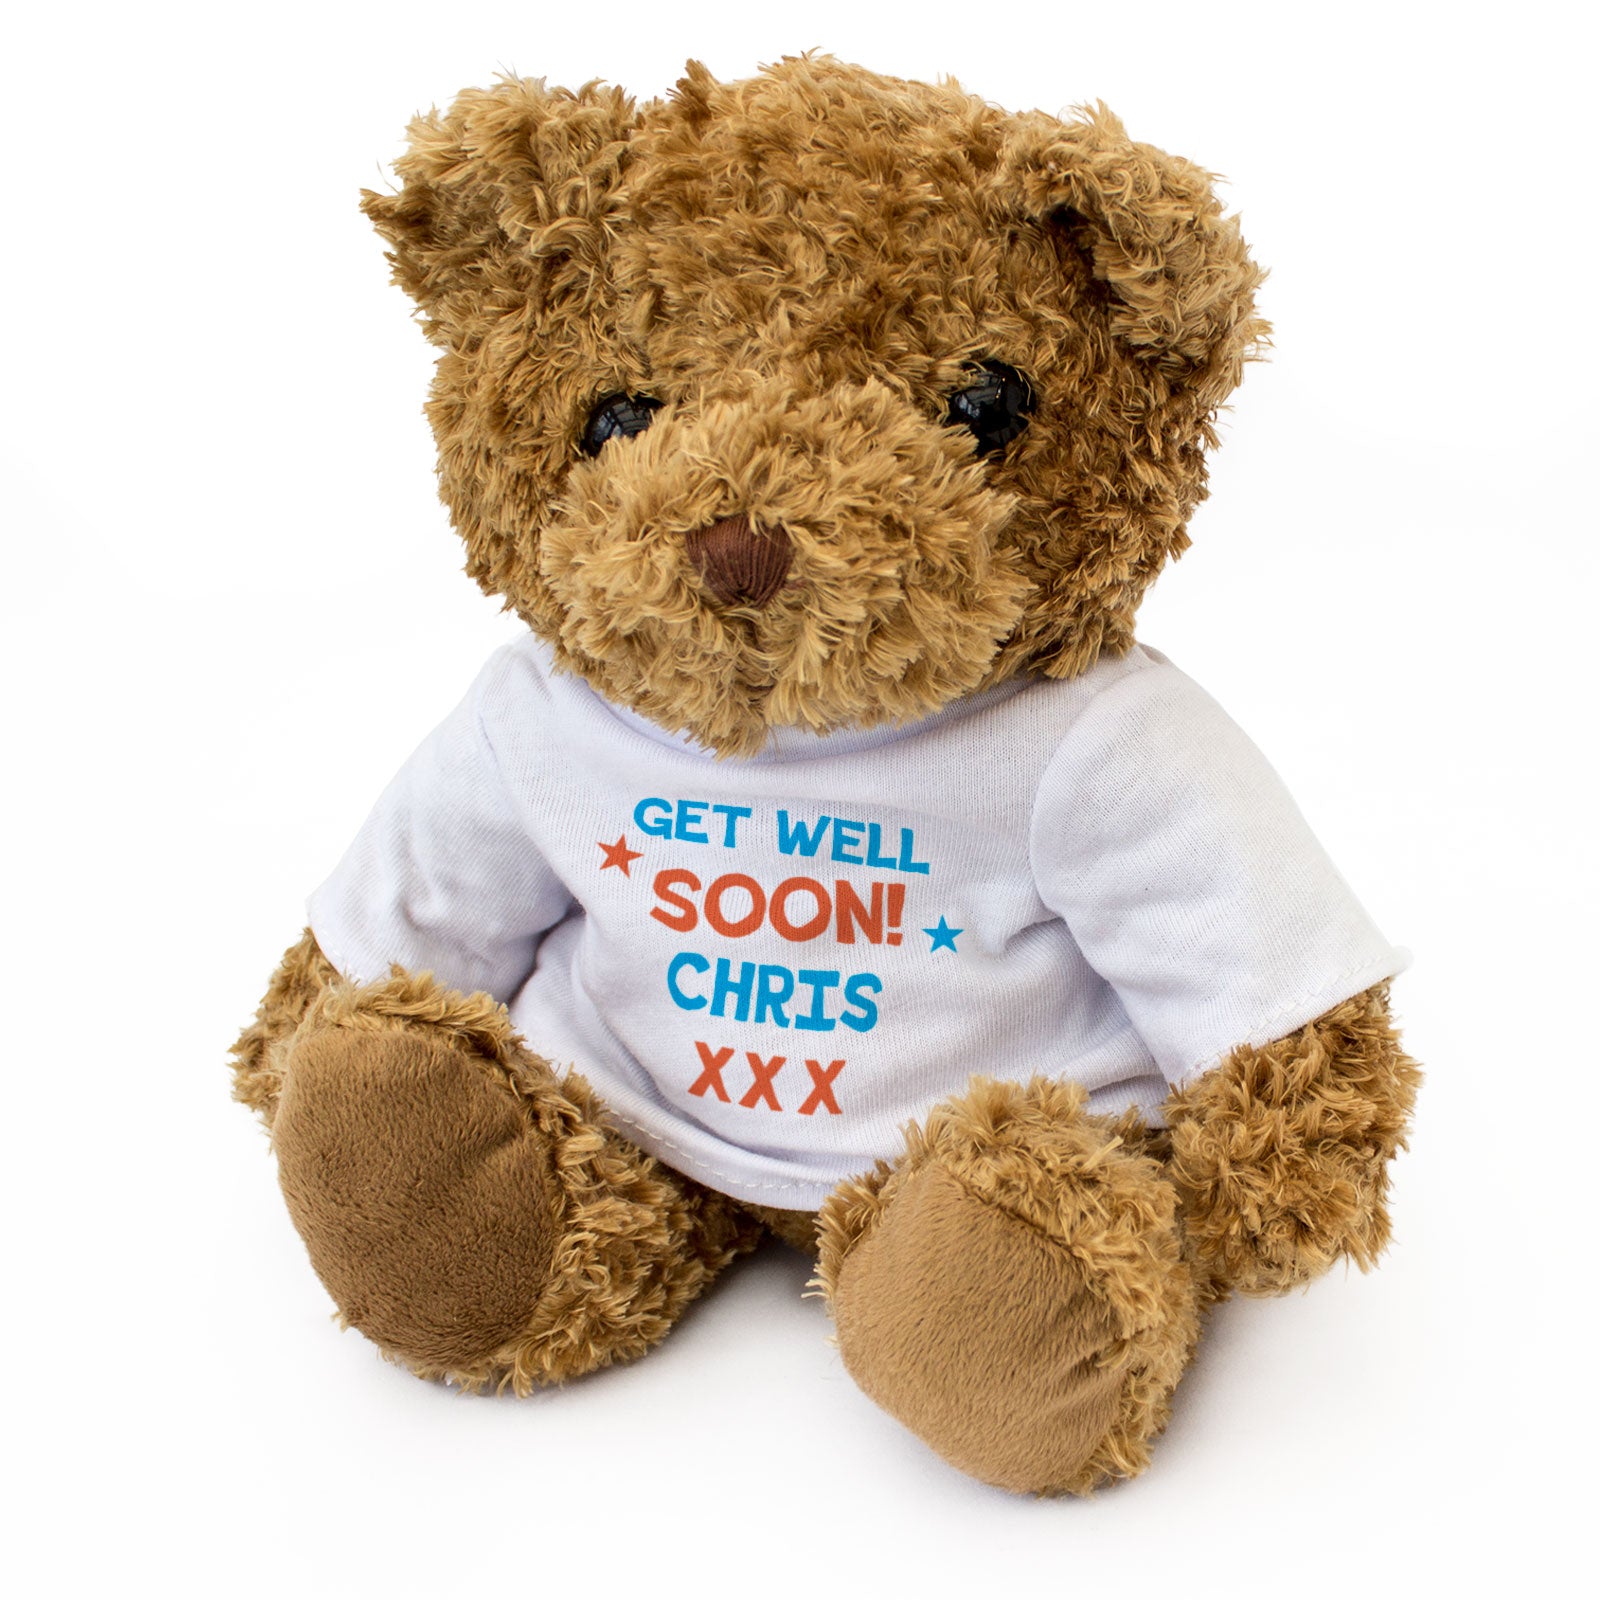 Get Well Soon Chris - Teddy Bear